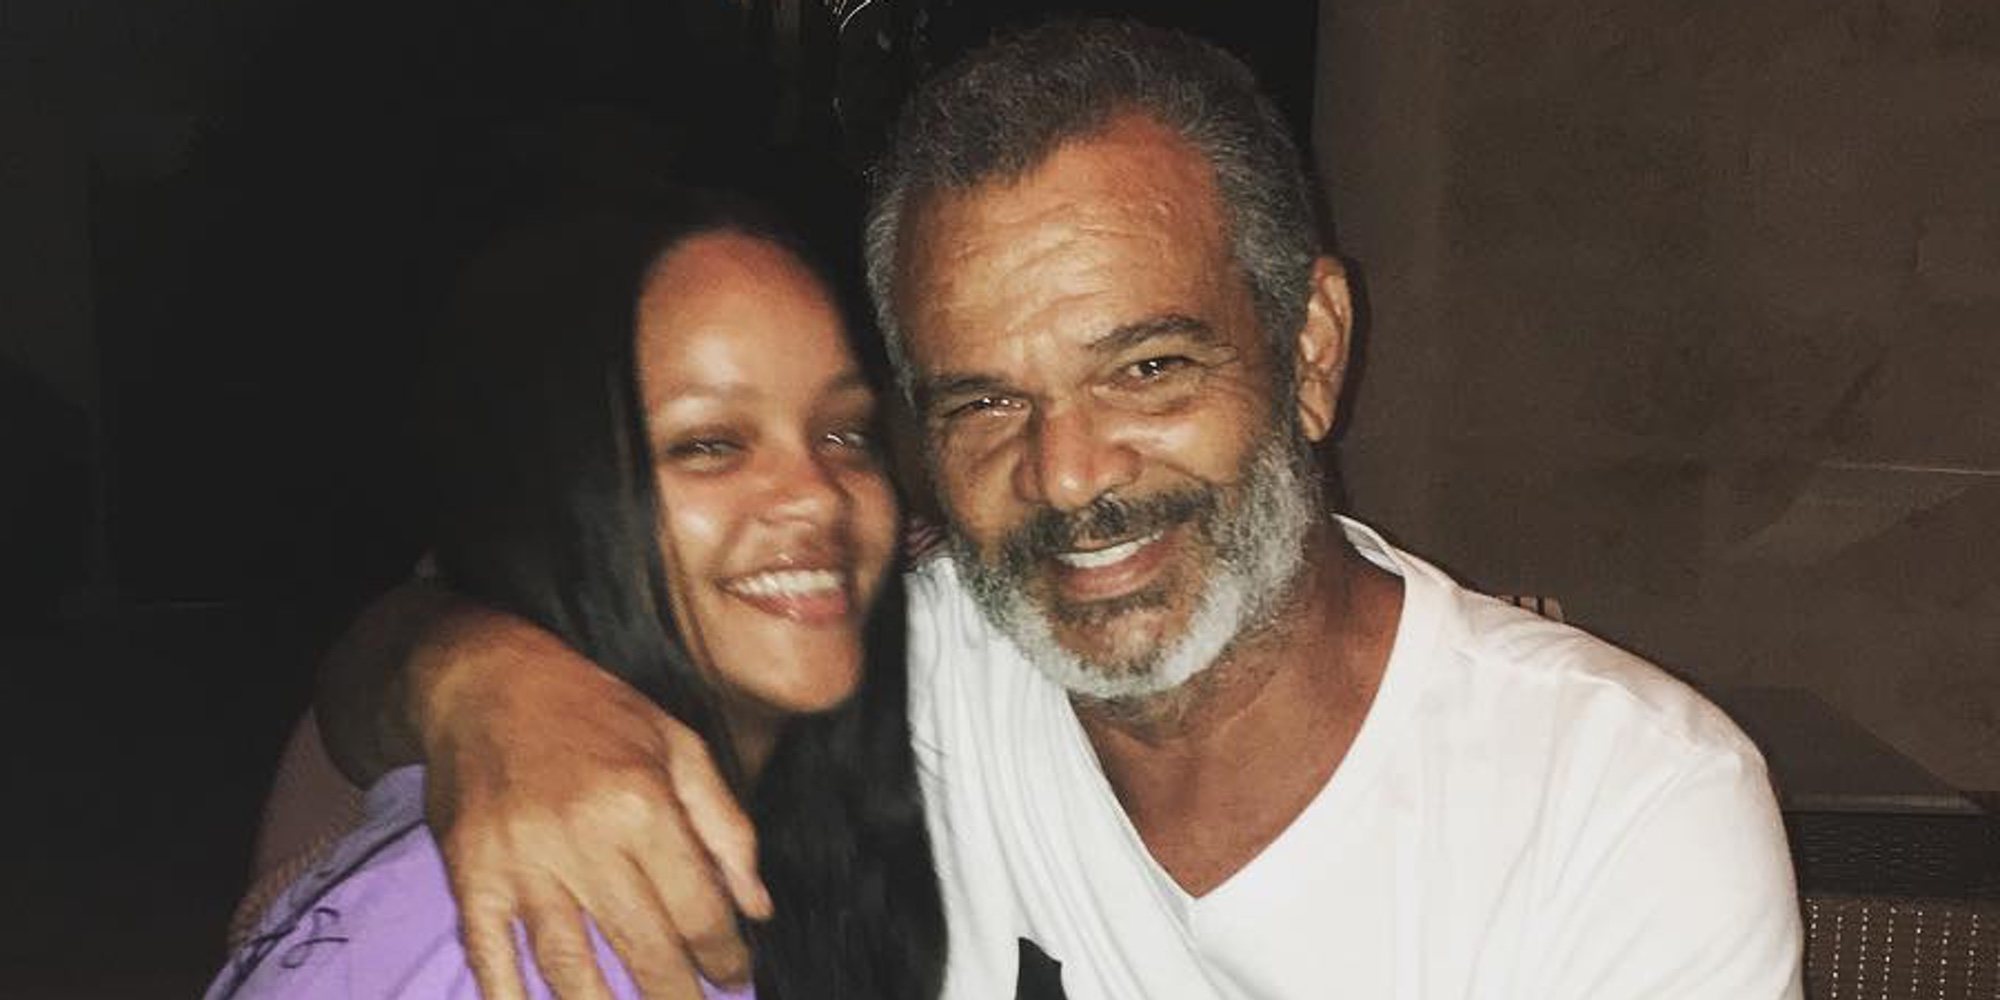 Rihanna demanda a su padre por promover una empresa a costa de su nombre